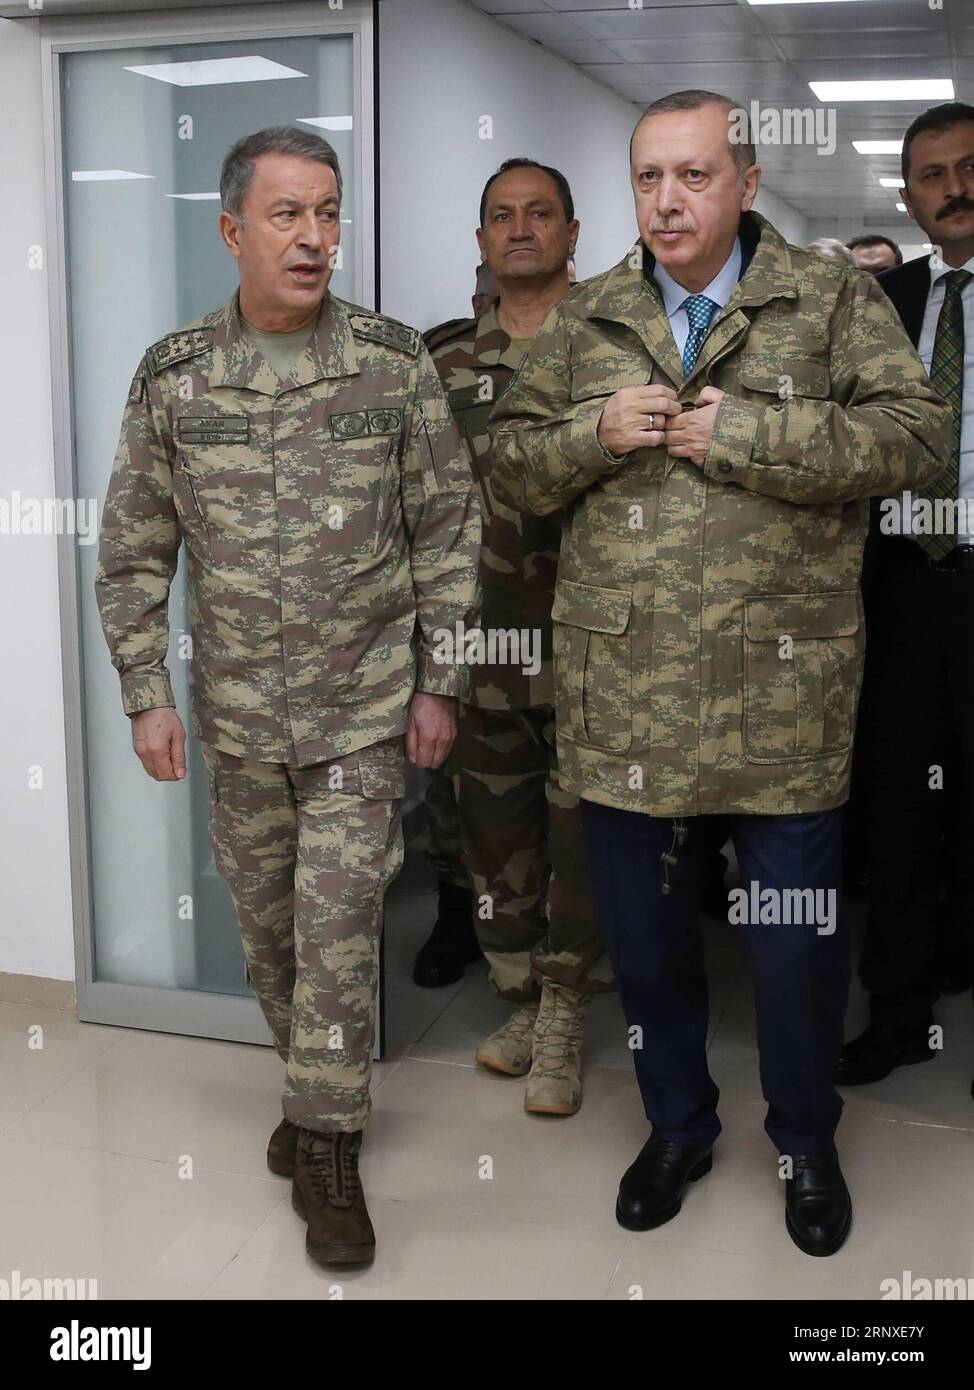 Bilder des Tages (180125) -- HATAY (TÜRKEI), 25. Januar 2018 -- der türkische Präsident Recep Tayyip Erdogan (R, Front) wird vom türkischen Generalstabschef Hulusi Akar (L, Front) begleitet, der am 25. Januar 2018 ein militärisches Kommandozentrum in Hatay (Türkei) besucht. Der türkische Präsident Recep Tayyip Erdogan besuchte und inspizierte am Donnerstag das türkische Militärkommandozentrum in der südlichen Provinz Hatay, als die Operation Olive Branch in Syrien’s Afrin ihren sechsten Tag einnahm. TÜRKEI-HATAY-PRÄSIDENT-ERDOGAN-KOMMANDOZENTRALE-BESUCH TURKISHXPRESIDENTIALXPALACE PUBLICATIONXNOTXINXCHN Stockfoto